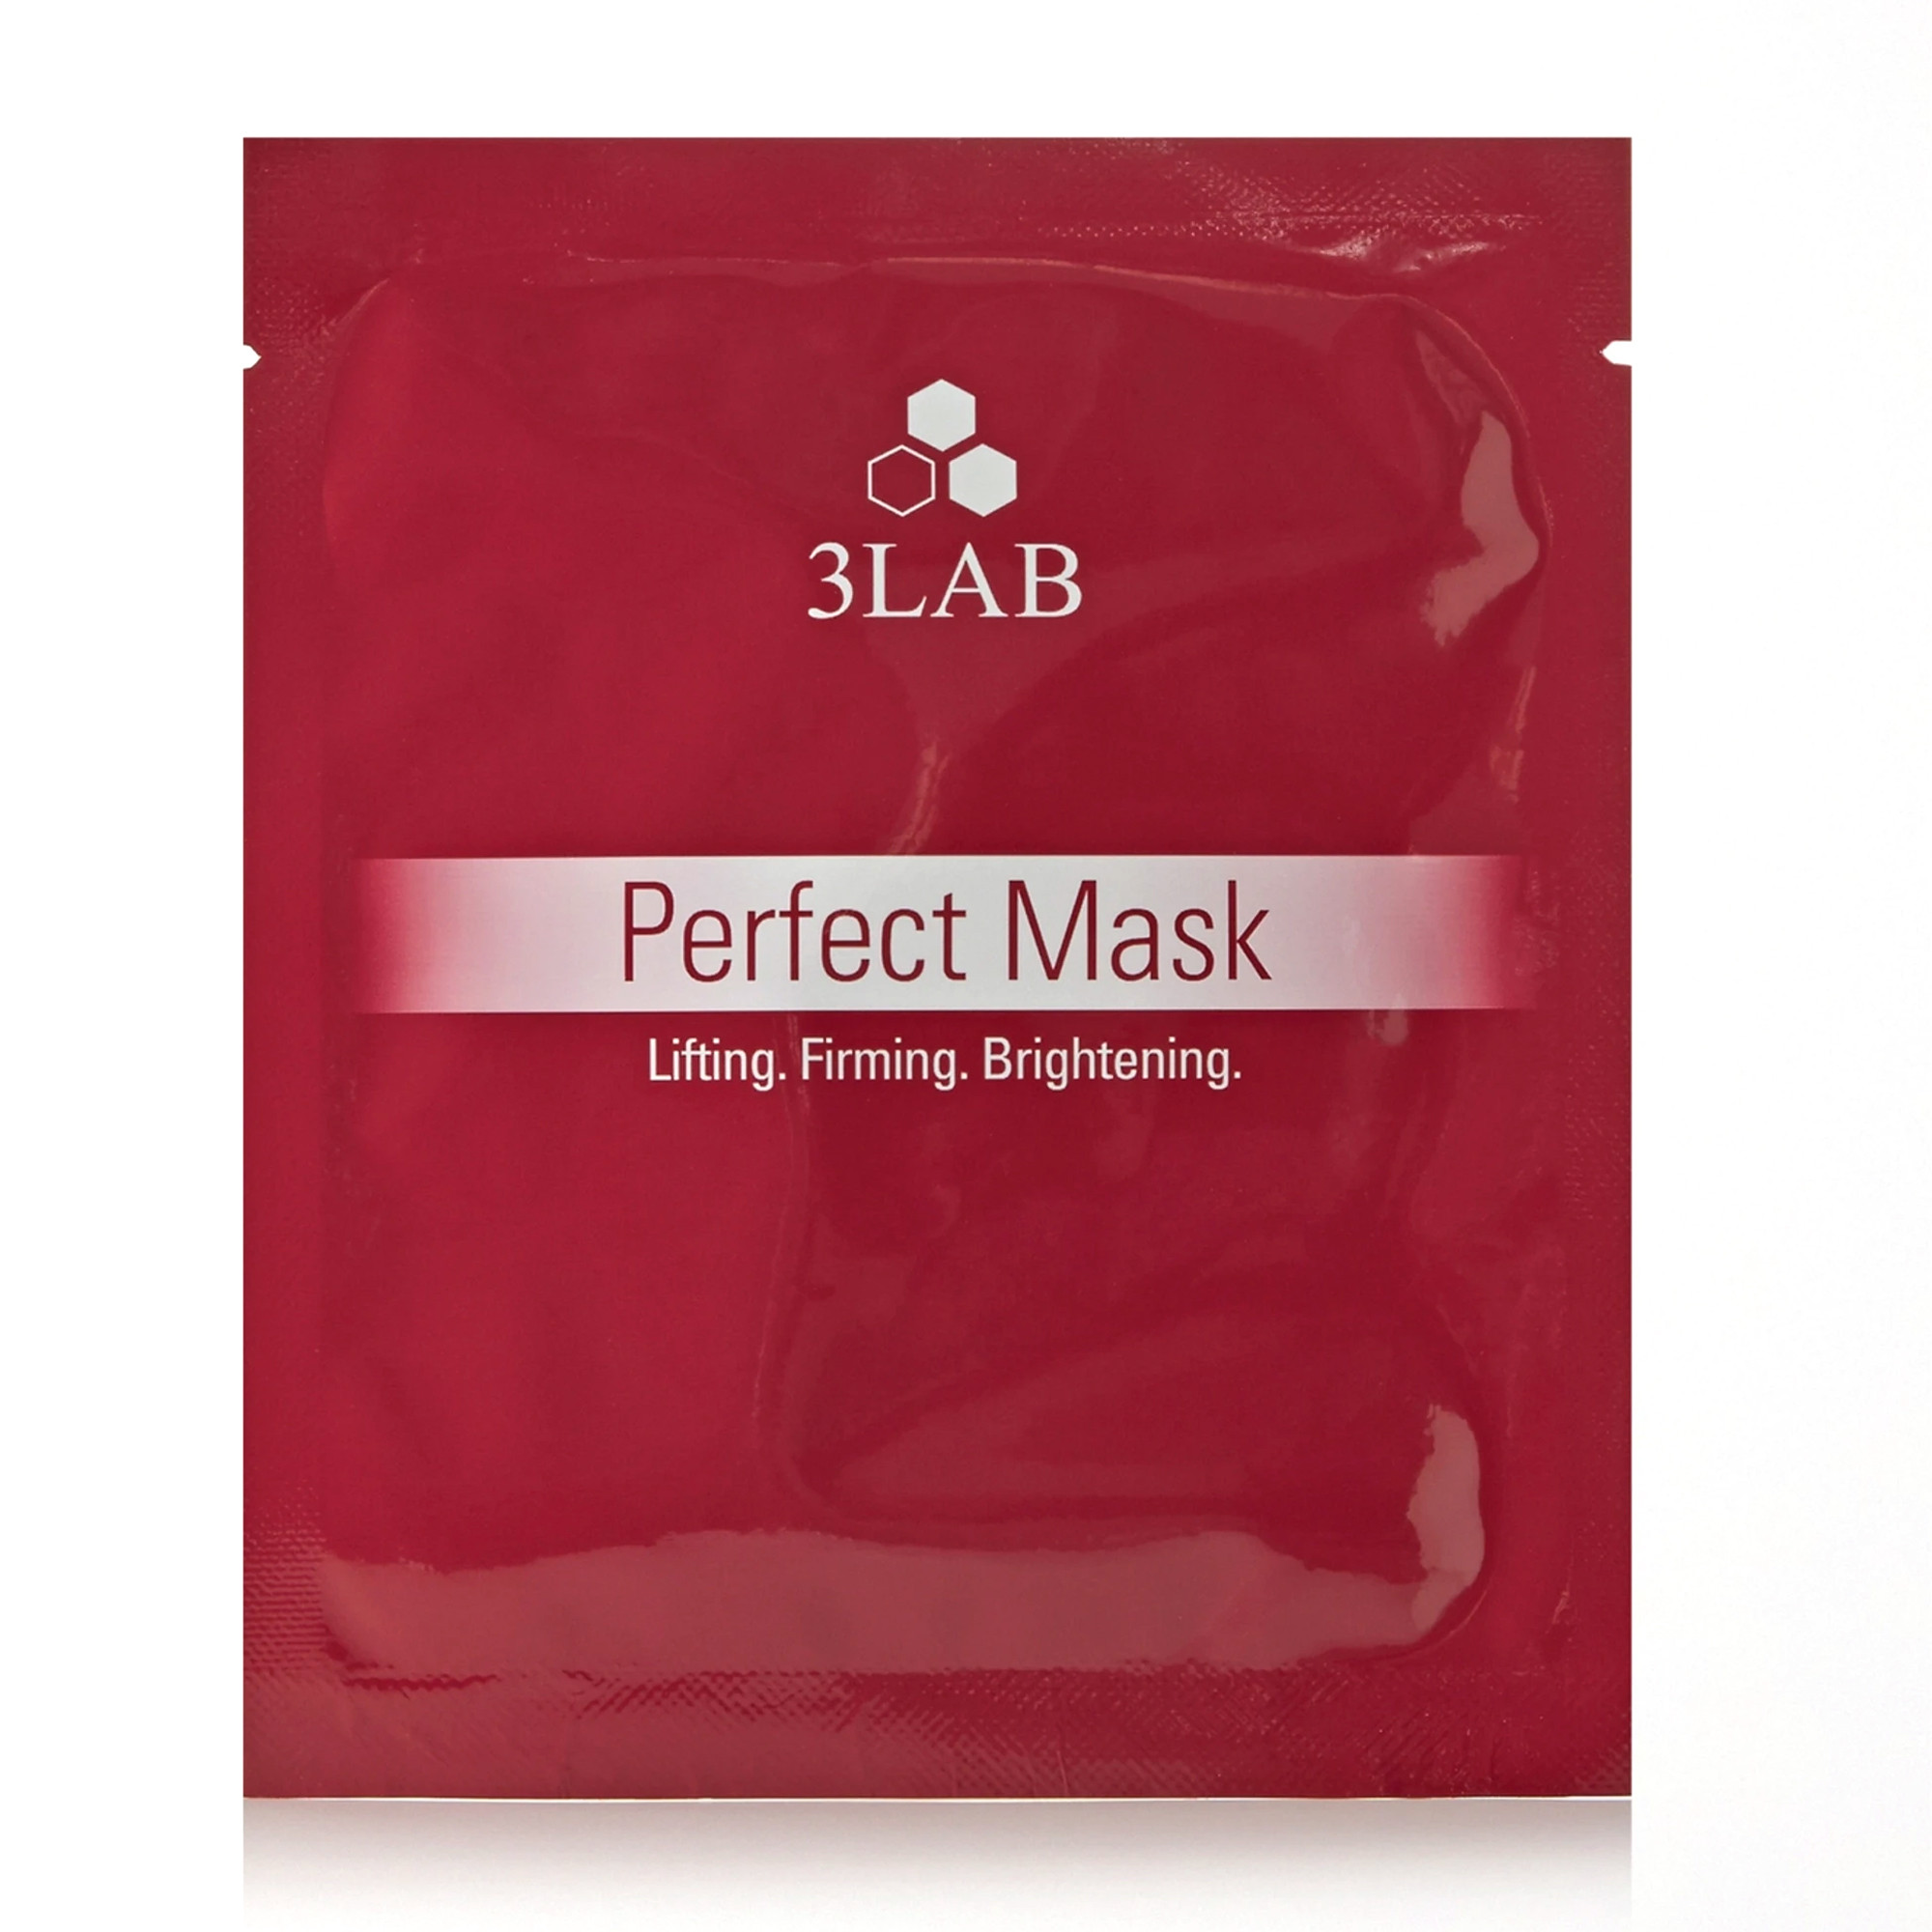 Отзывы о 3LAB Perfect Mask Моделирующая маска для лица с эффектом лифтинга